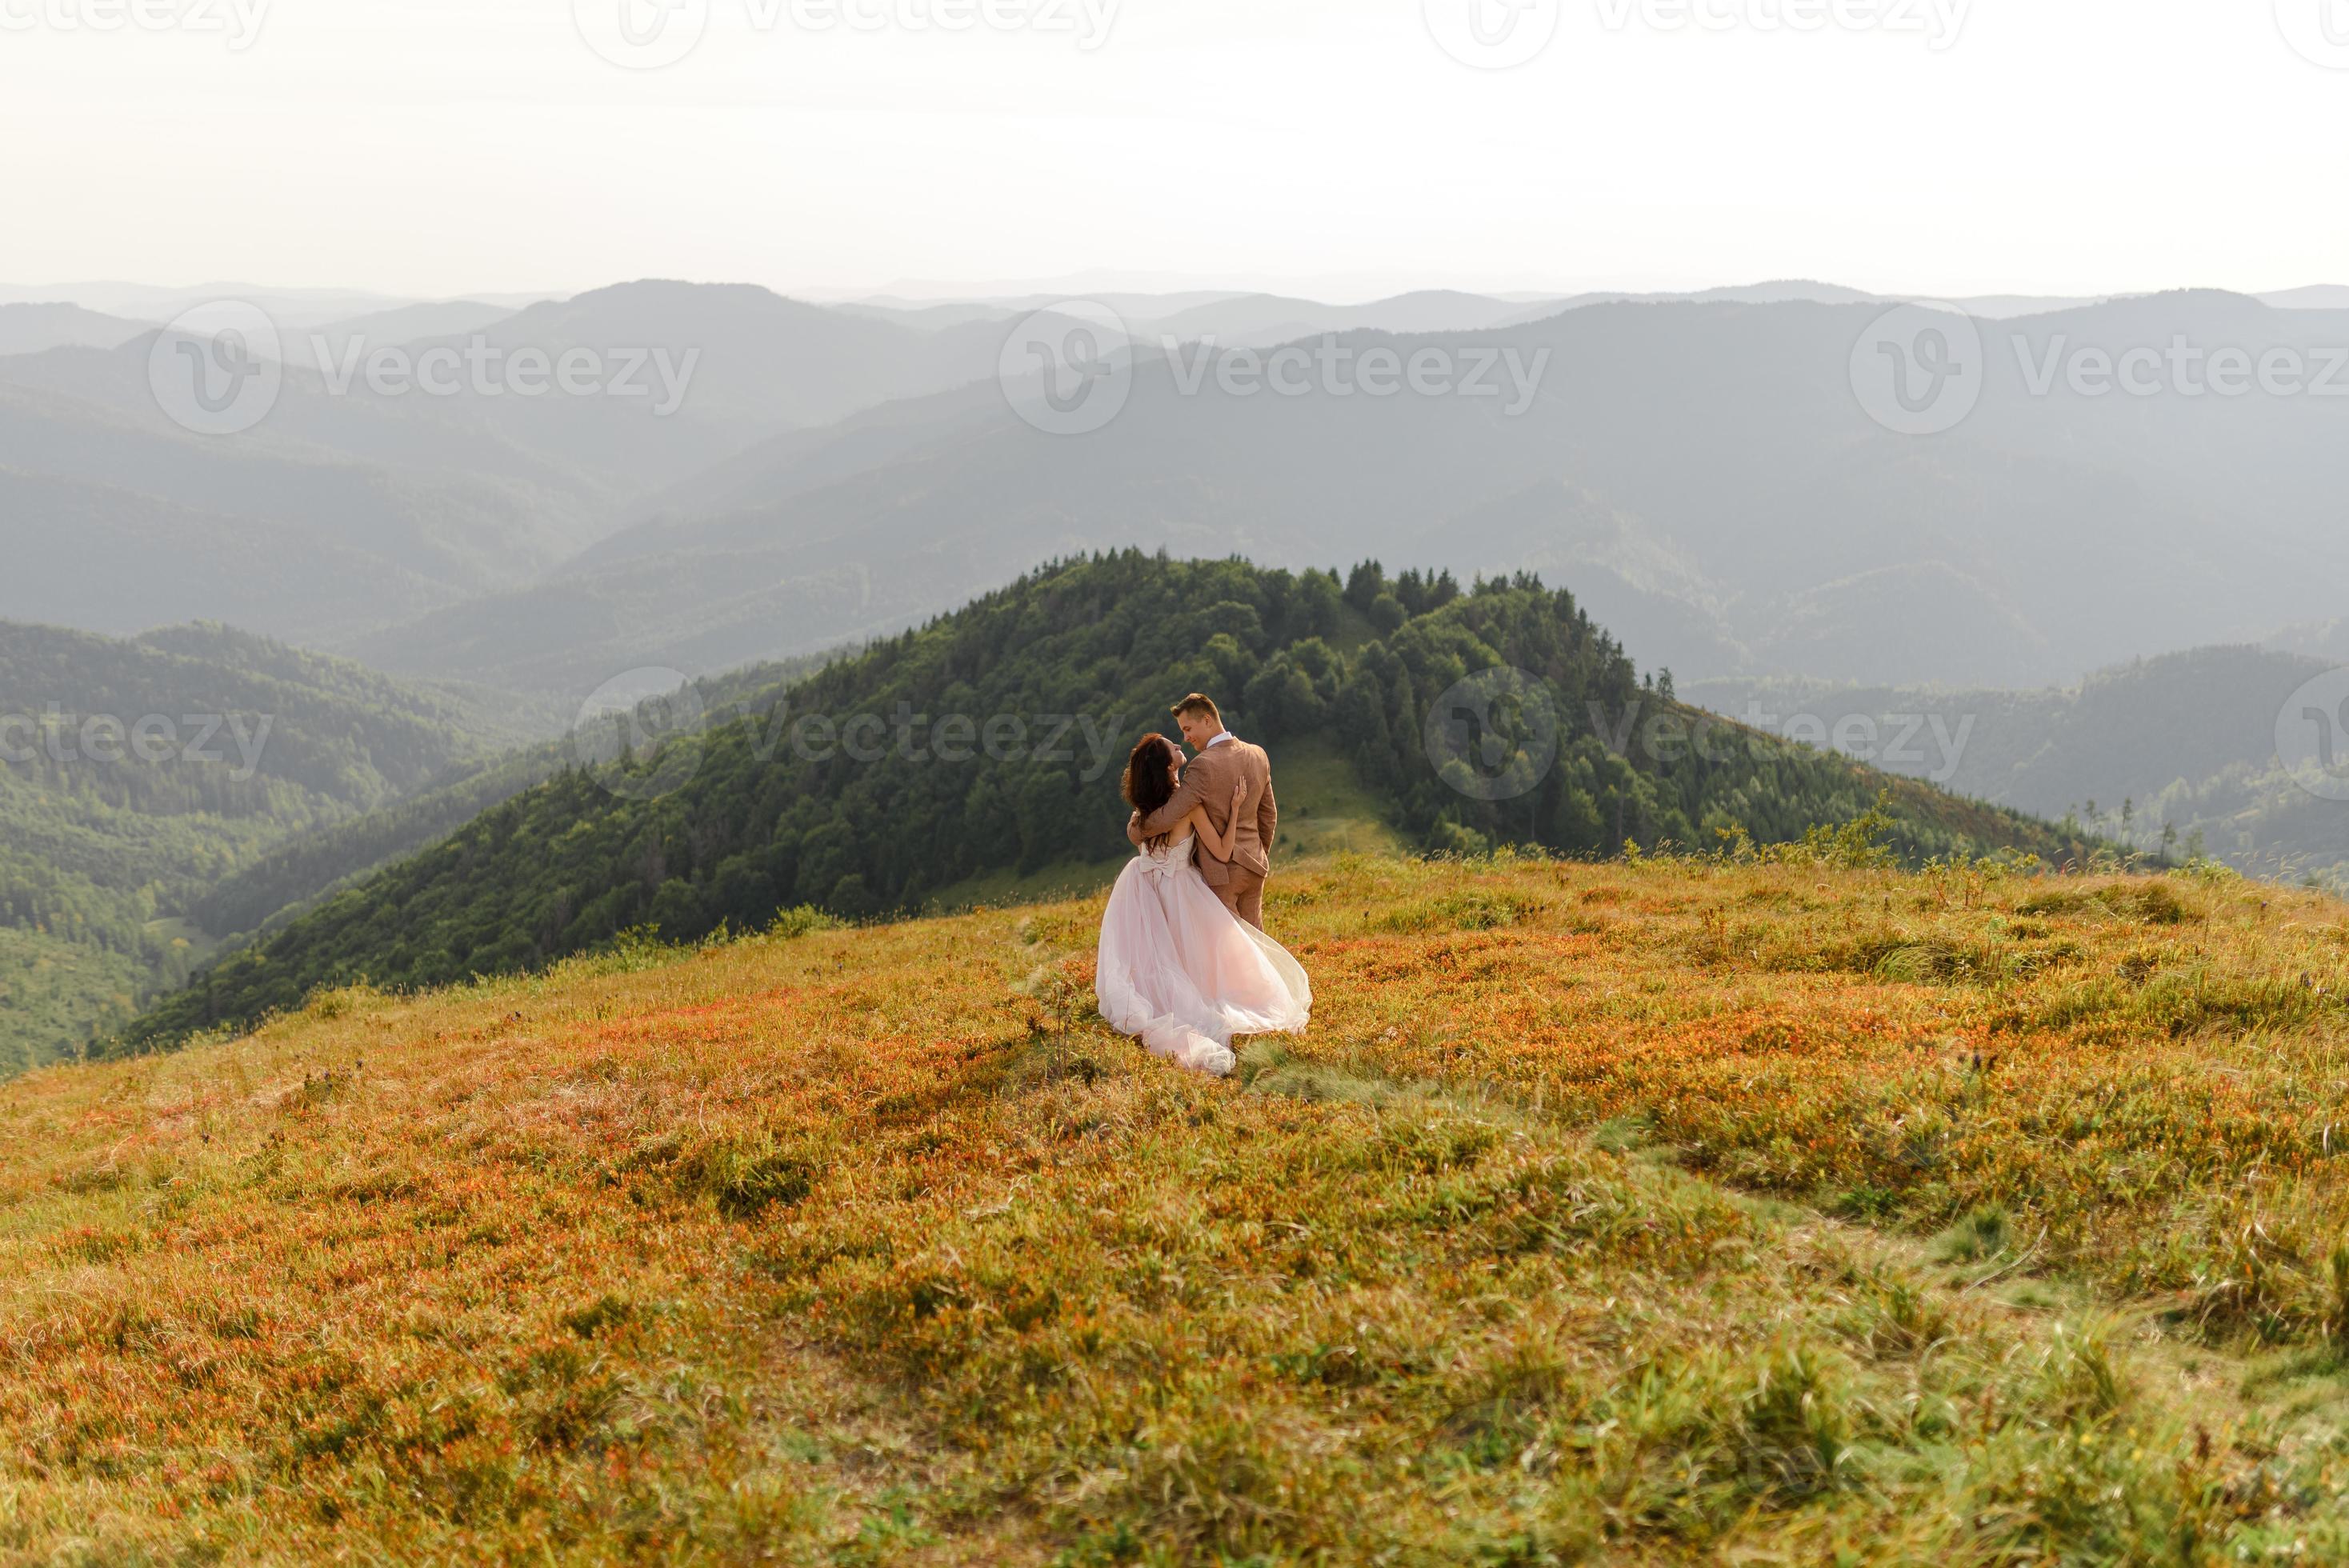 bruid en bruidegom. fotoshoot in de bergen. foto